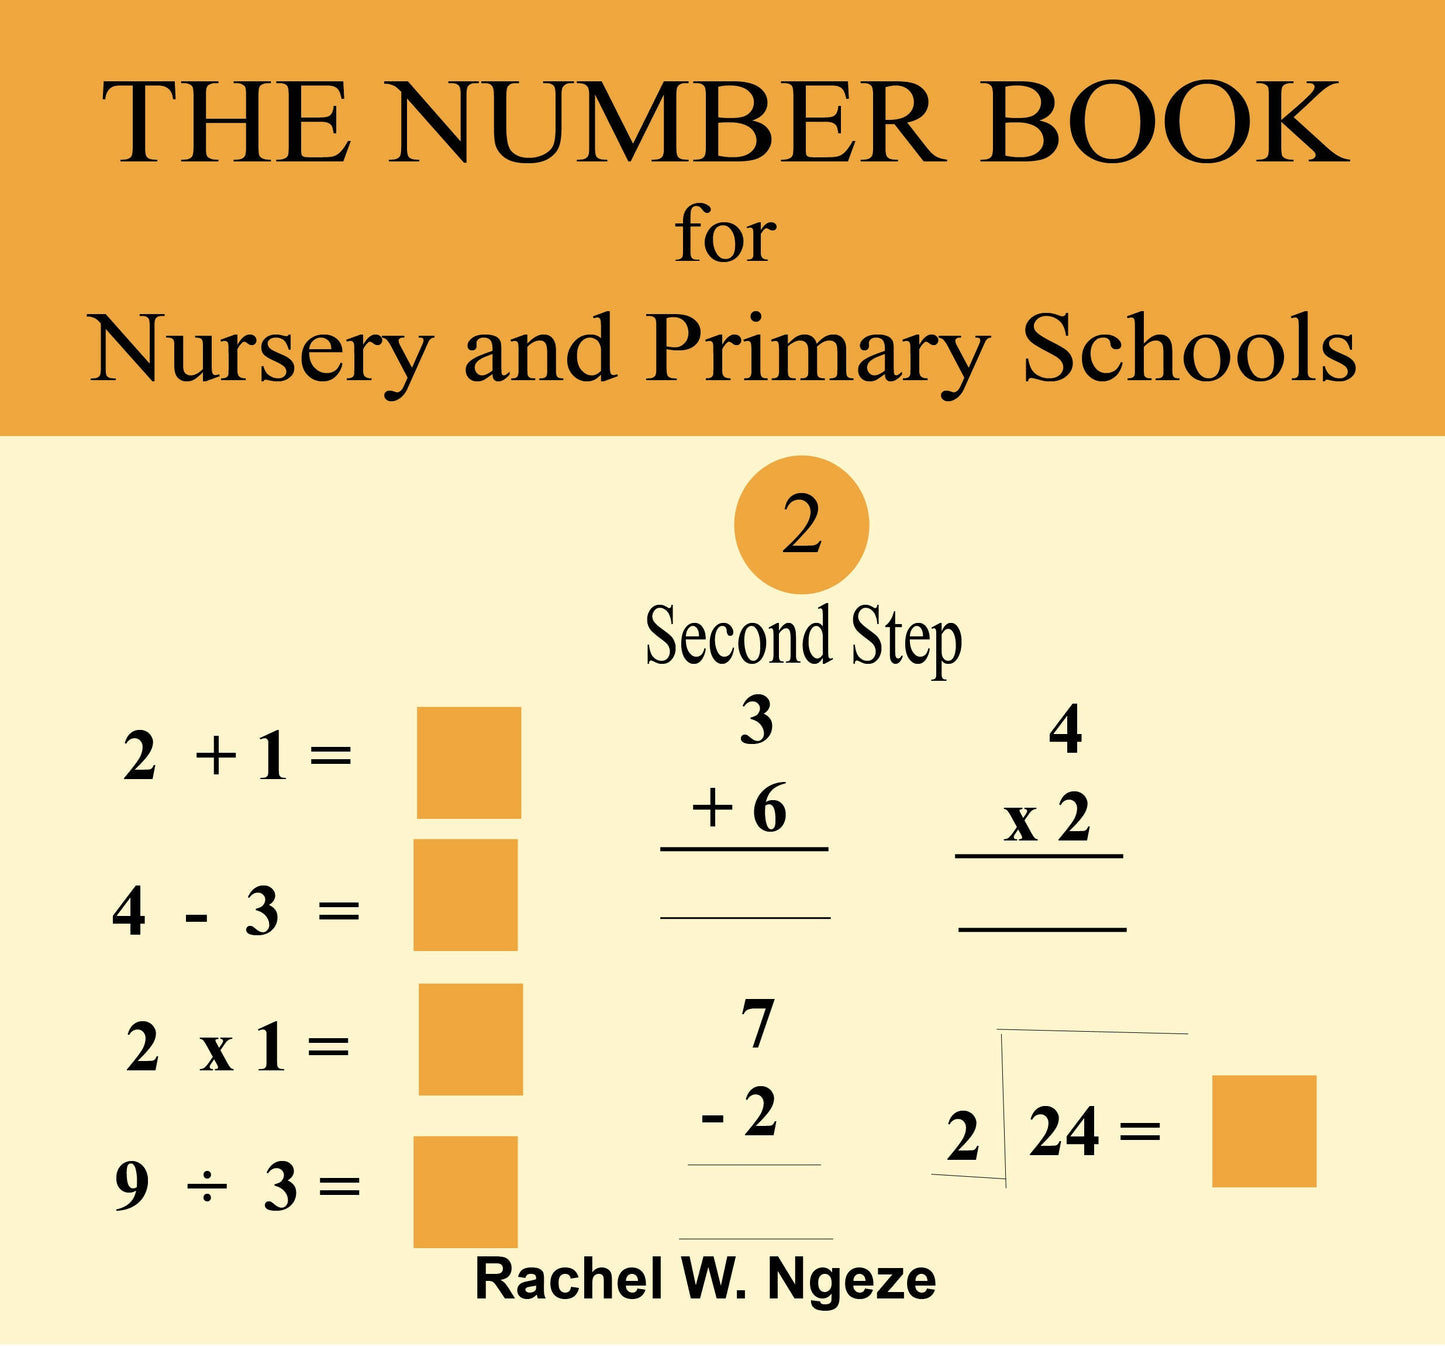 Das Zahlenbuch für Kindergärten und Grundschulen, zweiter Schritt 2